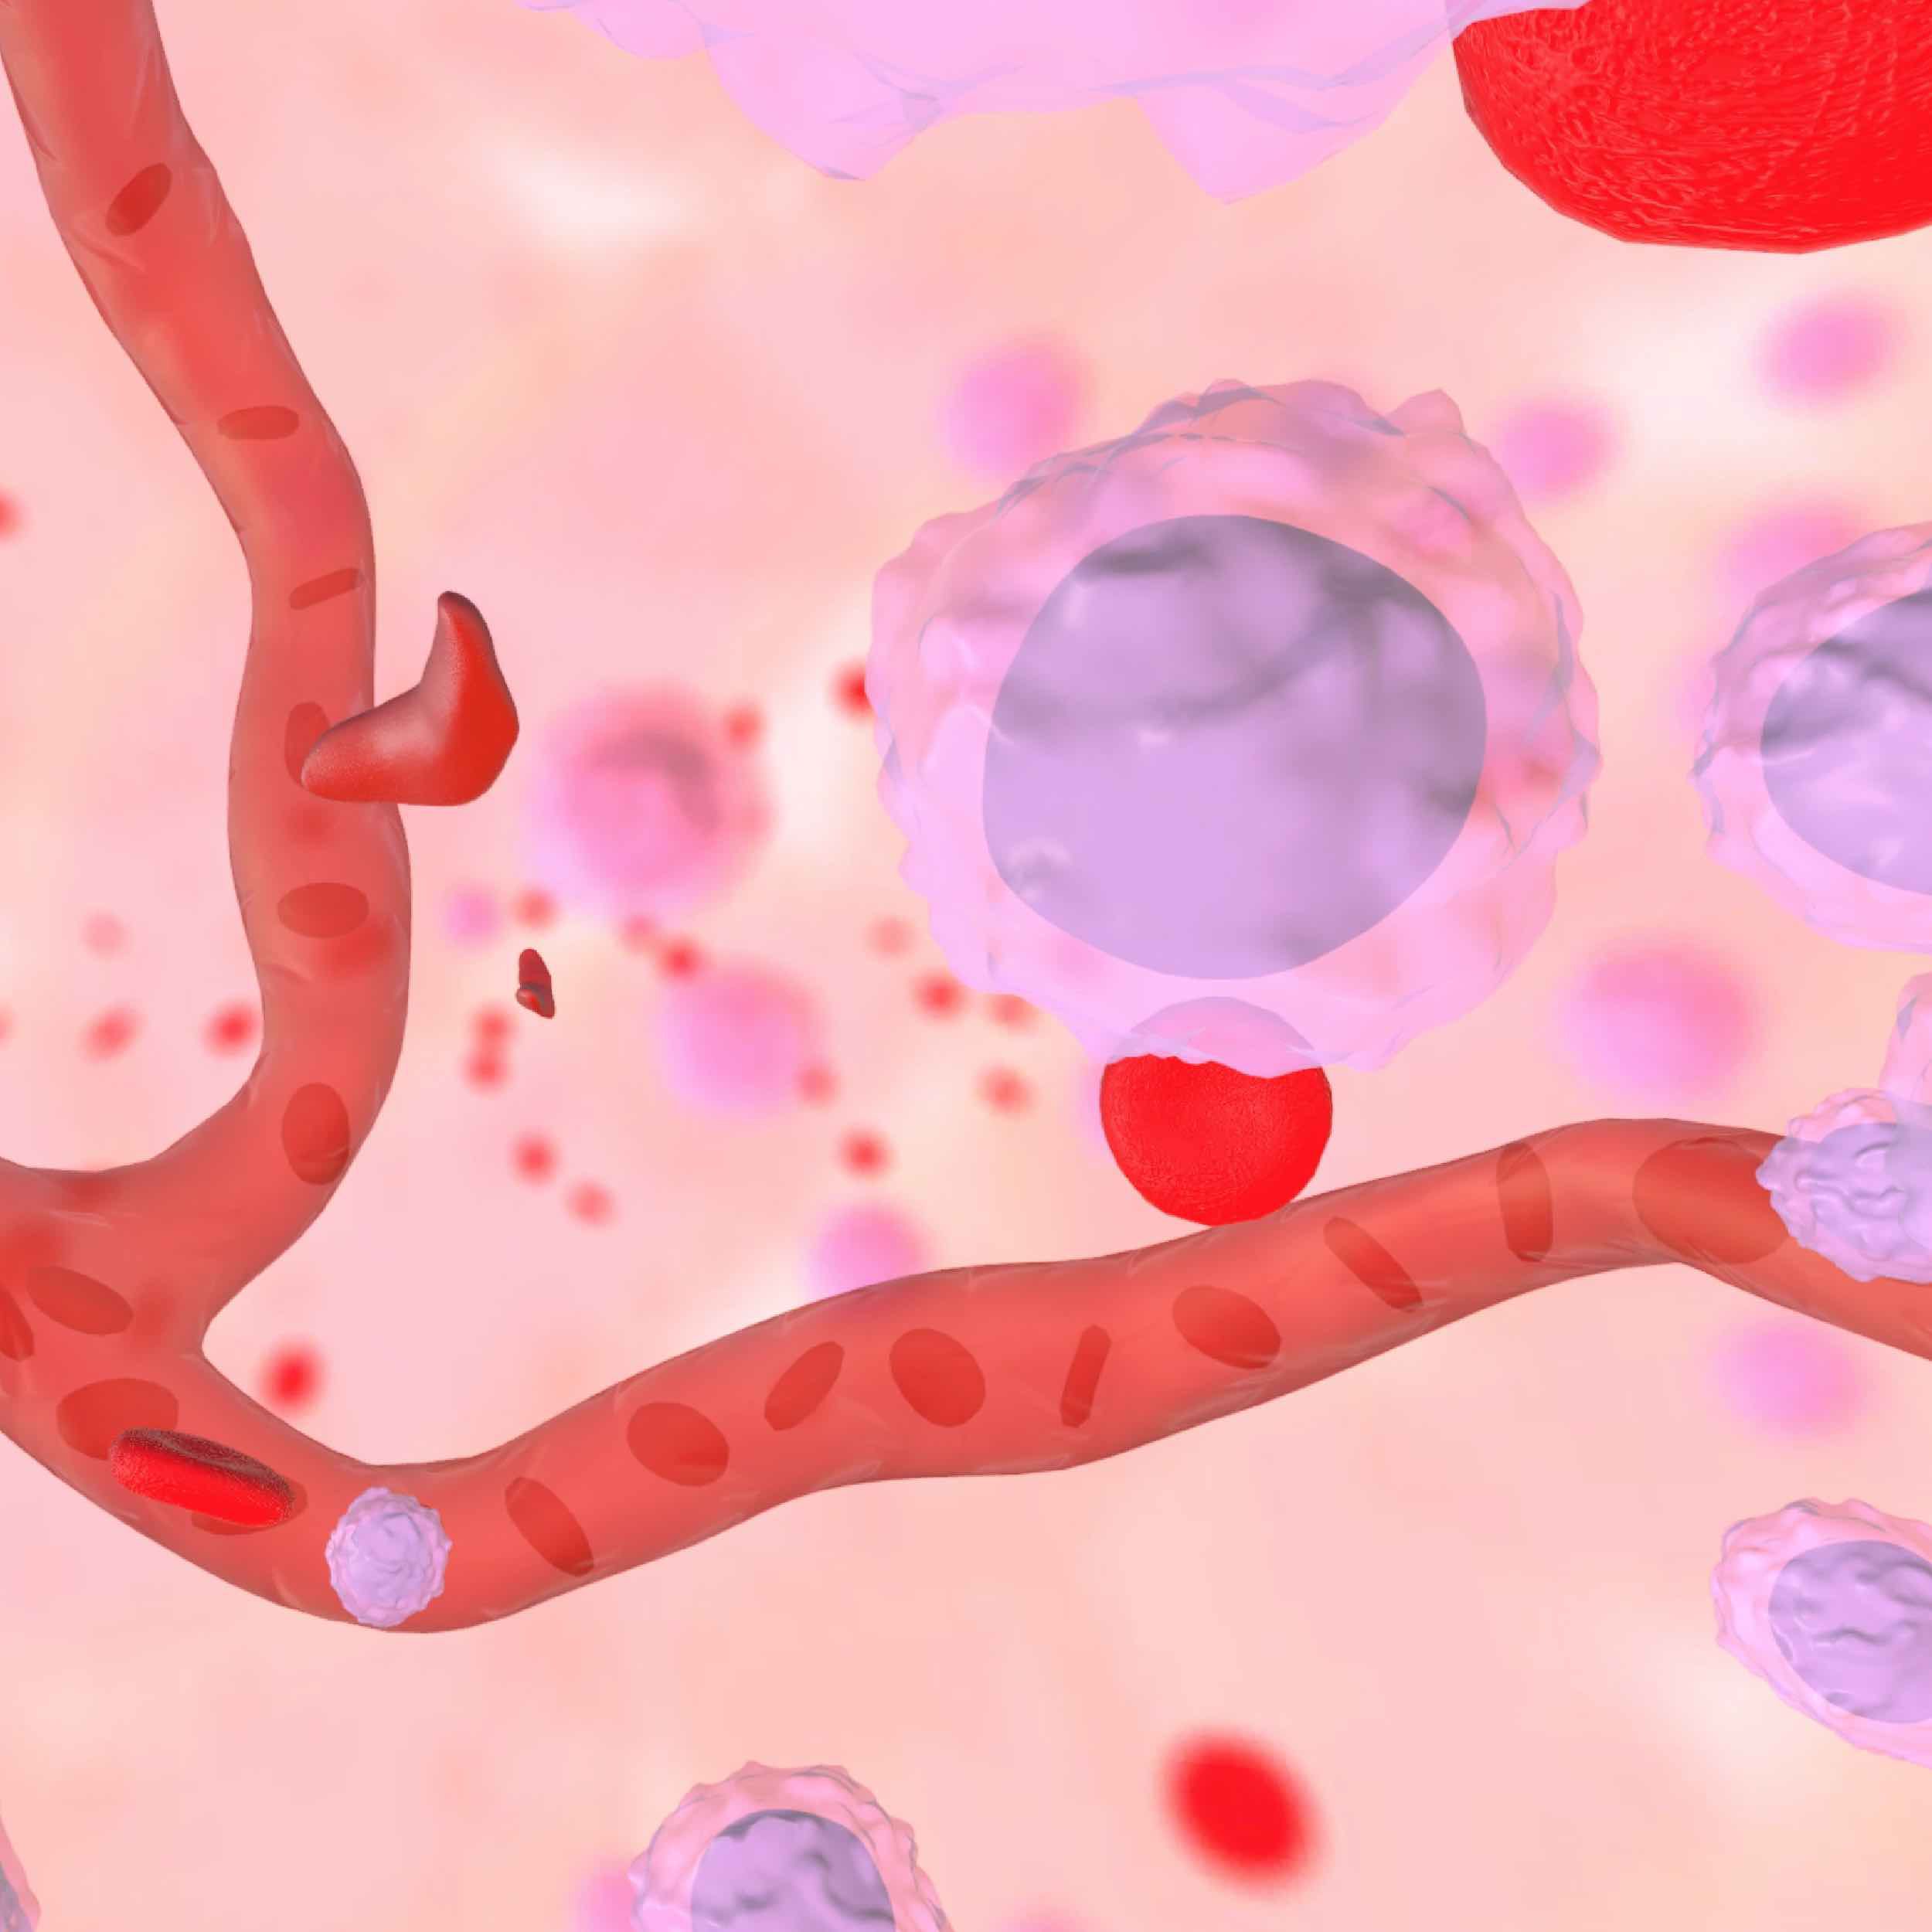 Representación gráfica del interior de la médula ósea que muestra glóbulos rojos, células madre y capilares